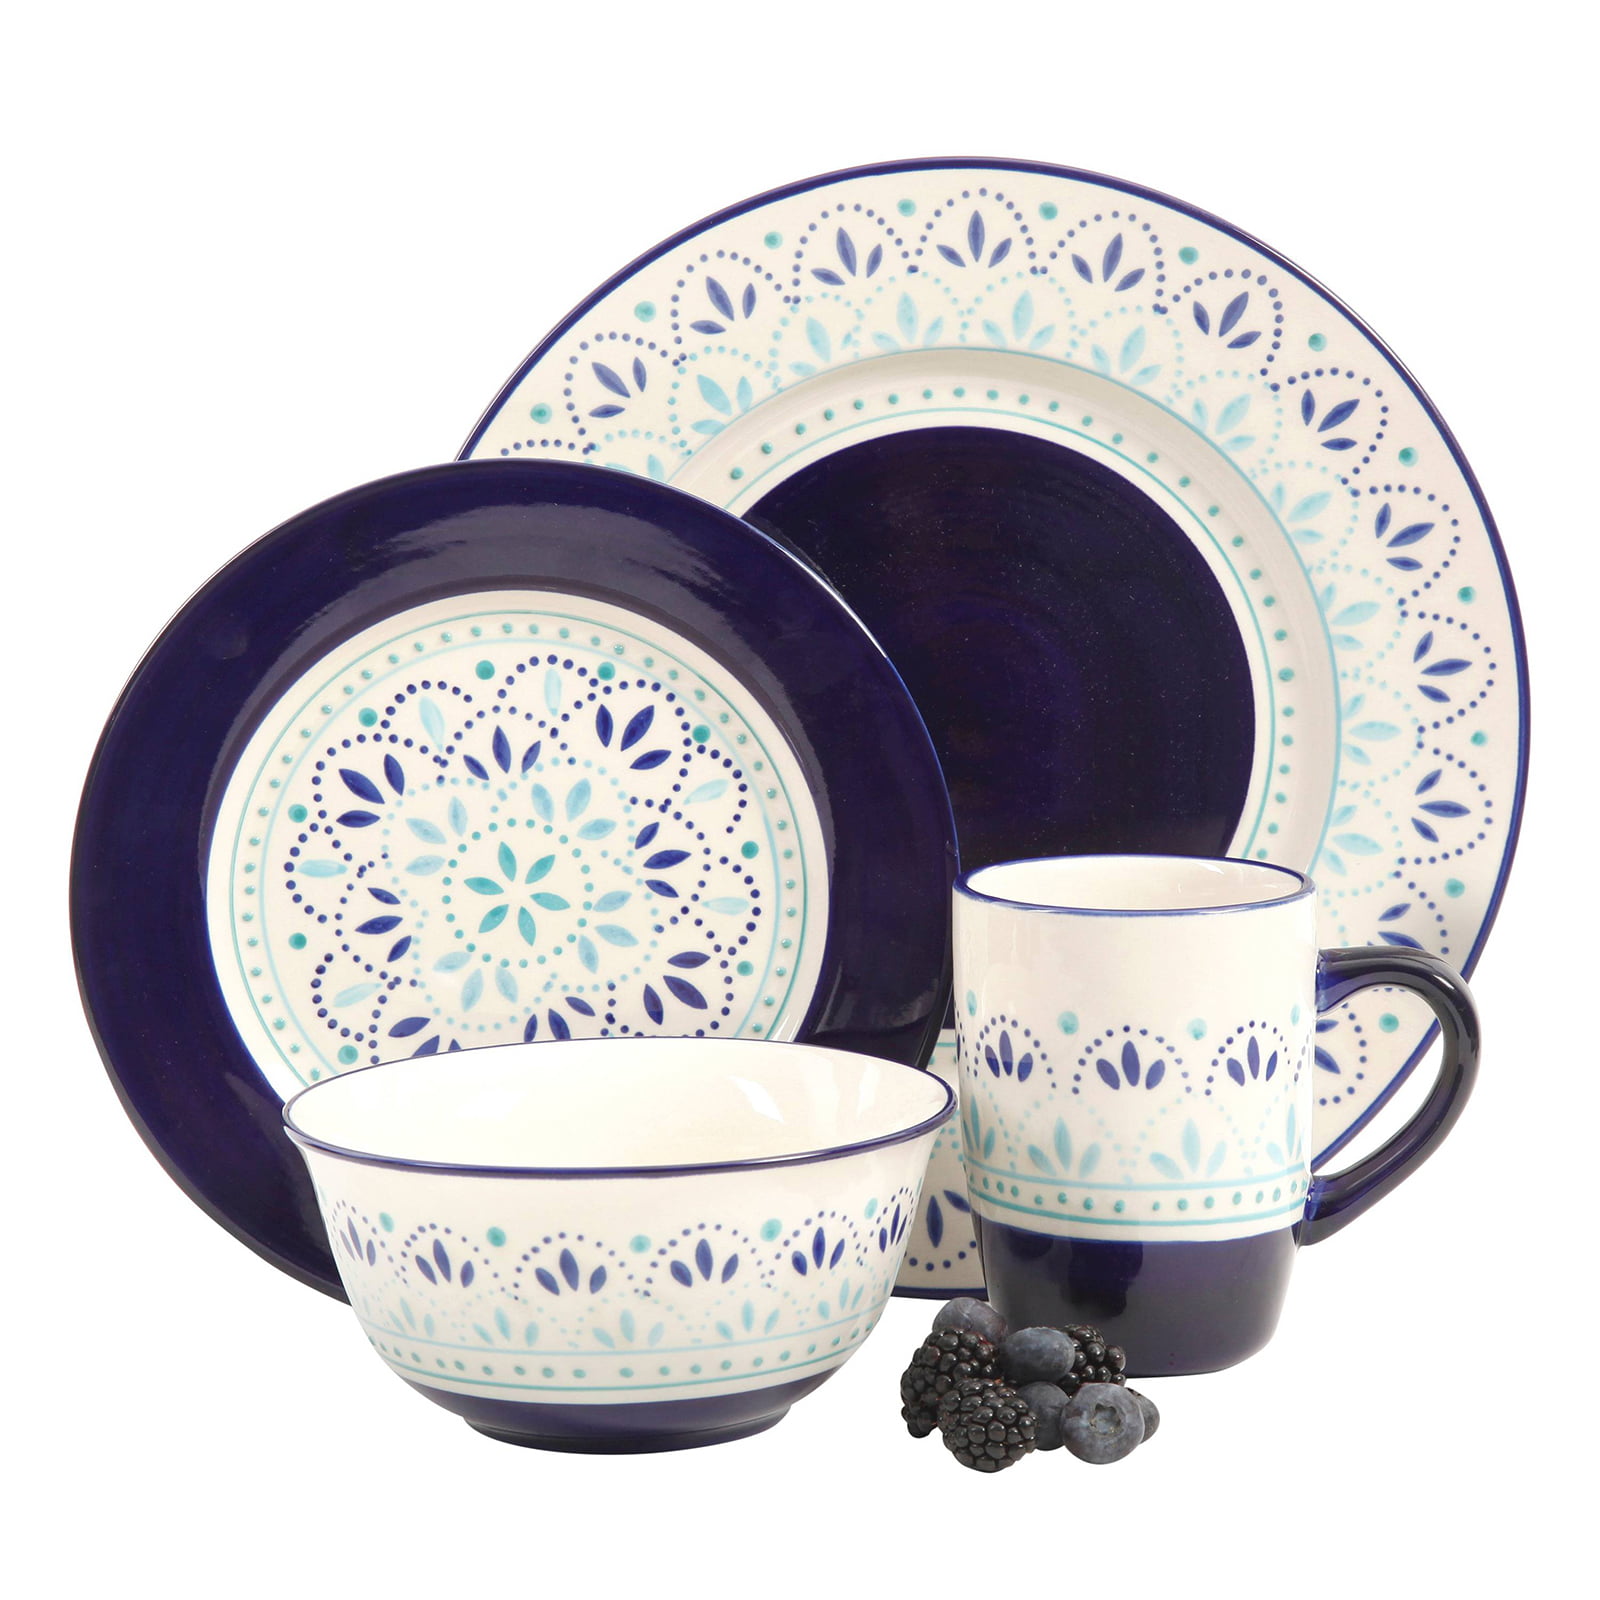 Kamille 16 Piece Stoneware Dinnerware Set, White/Blue - Walmart.com ...